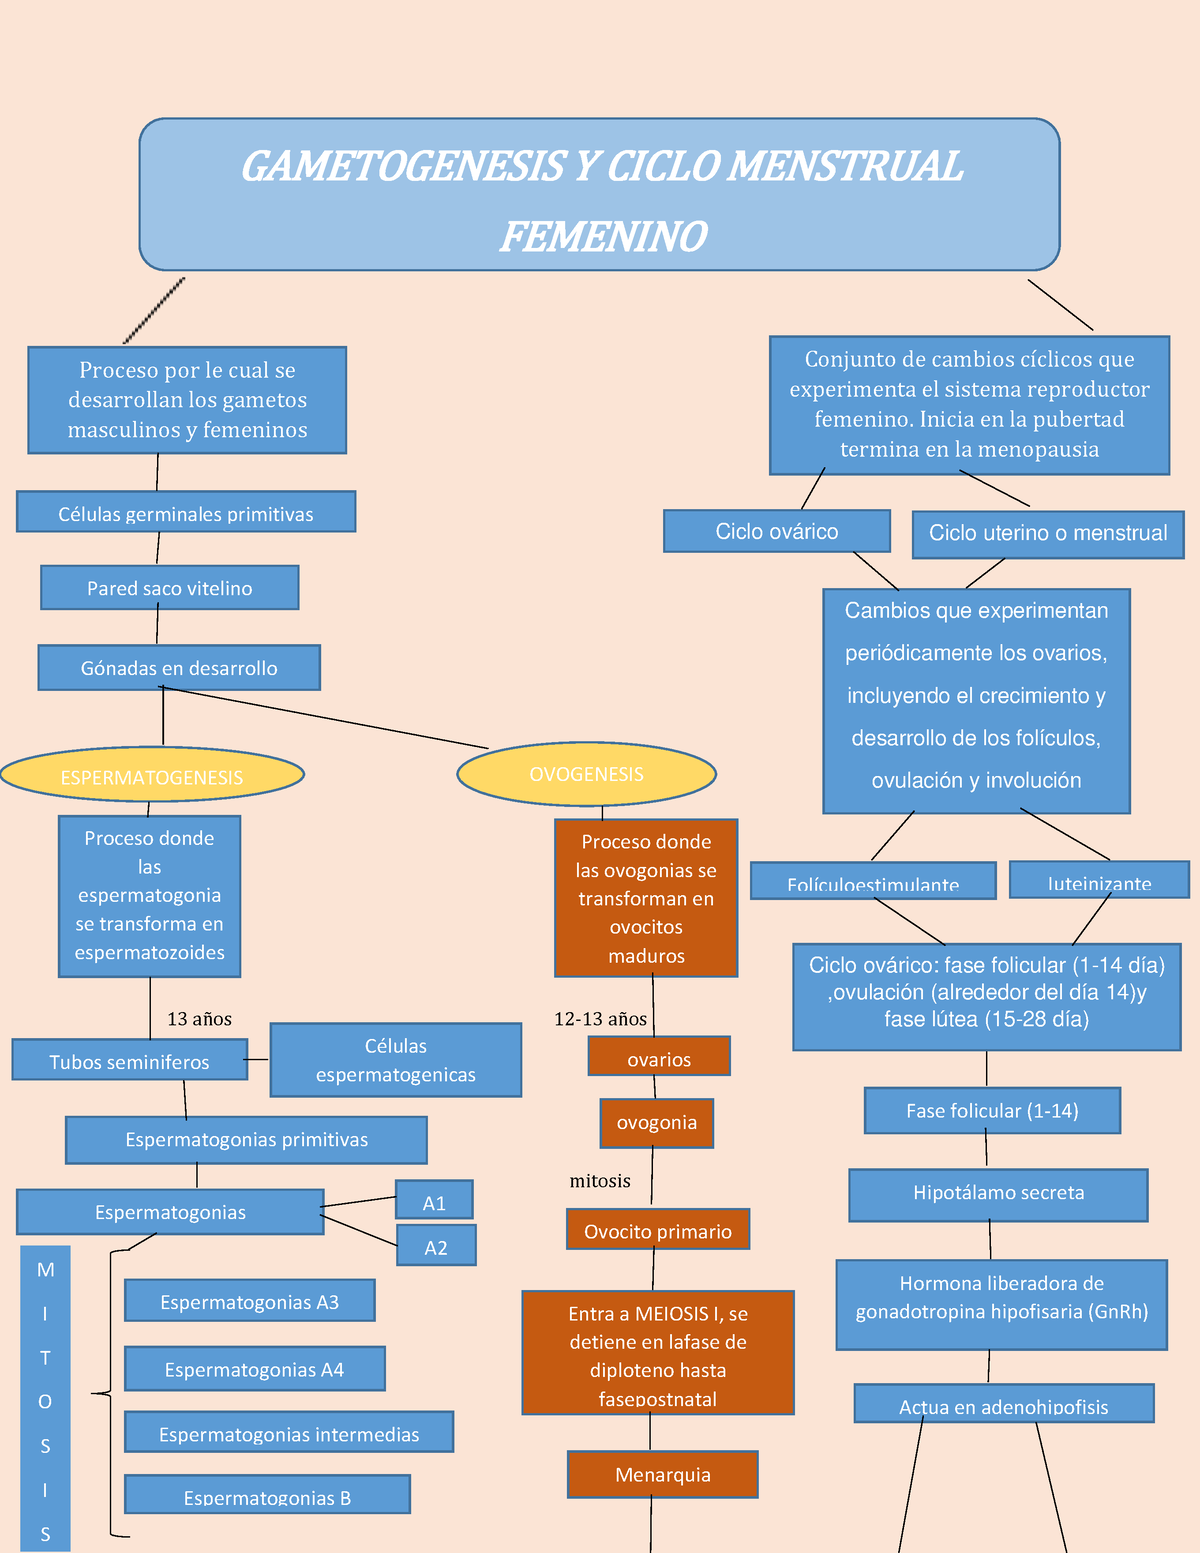 Gametogenesis Y Ciclo Menstrual Proceso Donde Las Ovogonias Se Transforman En Ovocitos Maduros 0448